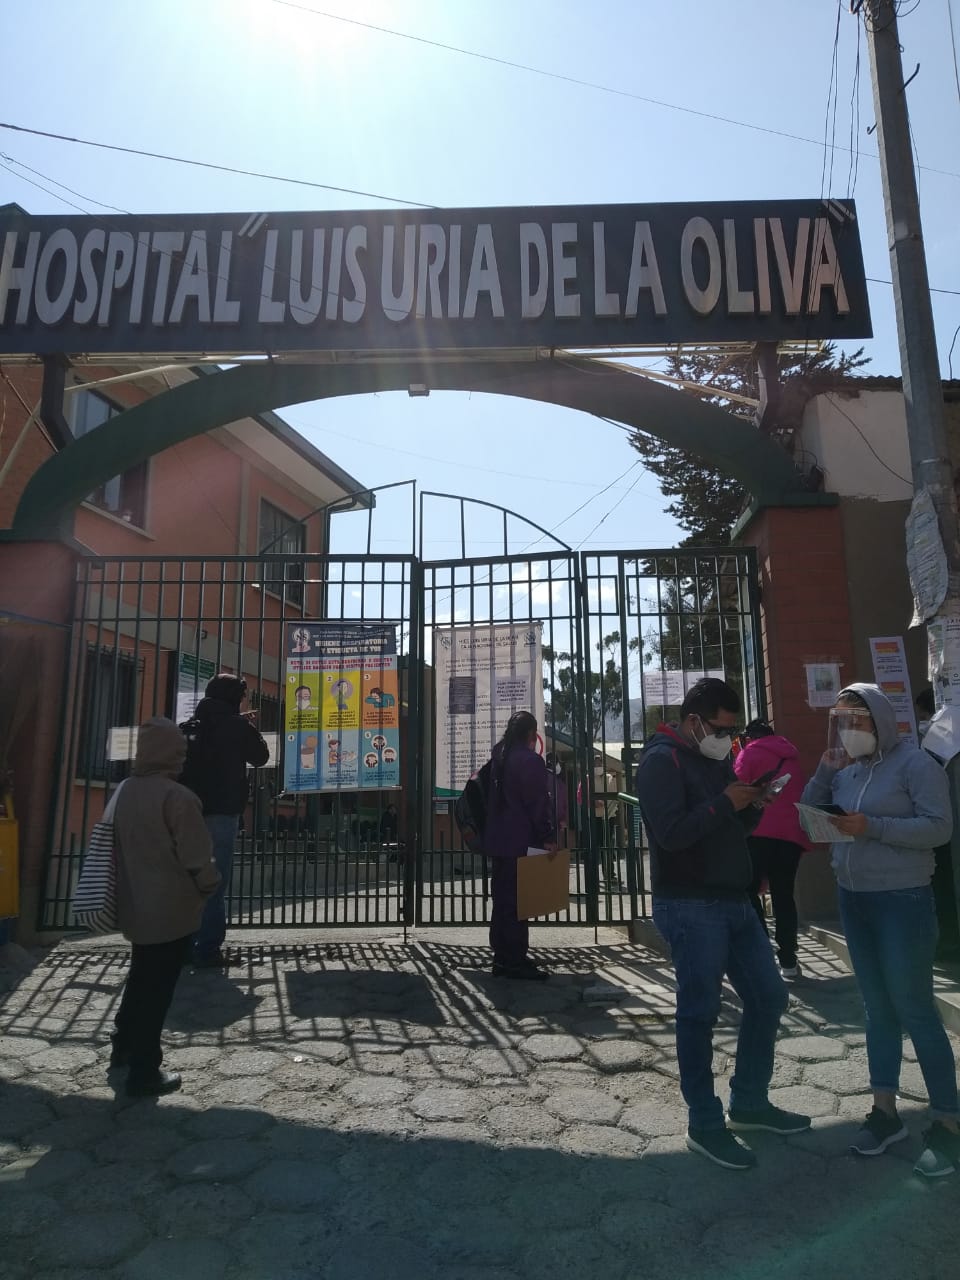 DEFENSORÍA DEL PUEBLO VERIFICA SUMINISTRO DE OXÍGENO EN HOSPITALES DE LA CIUDAD DE LA PAZ